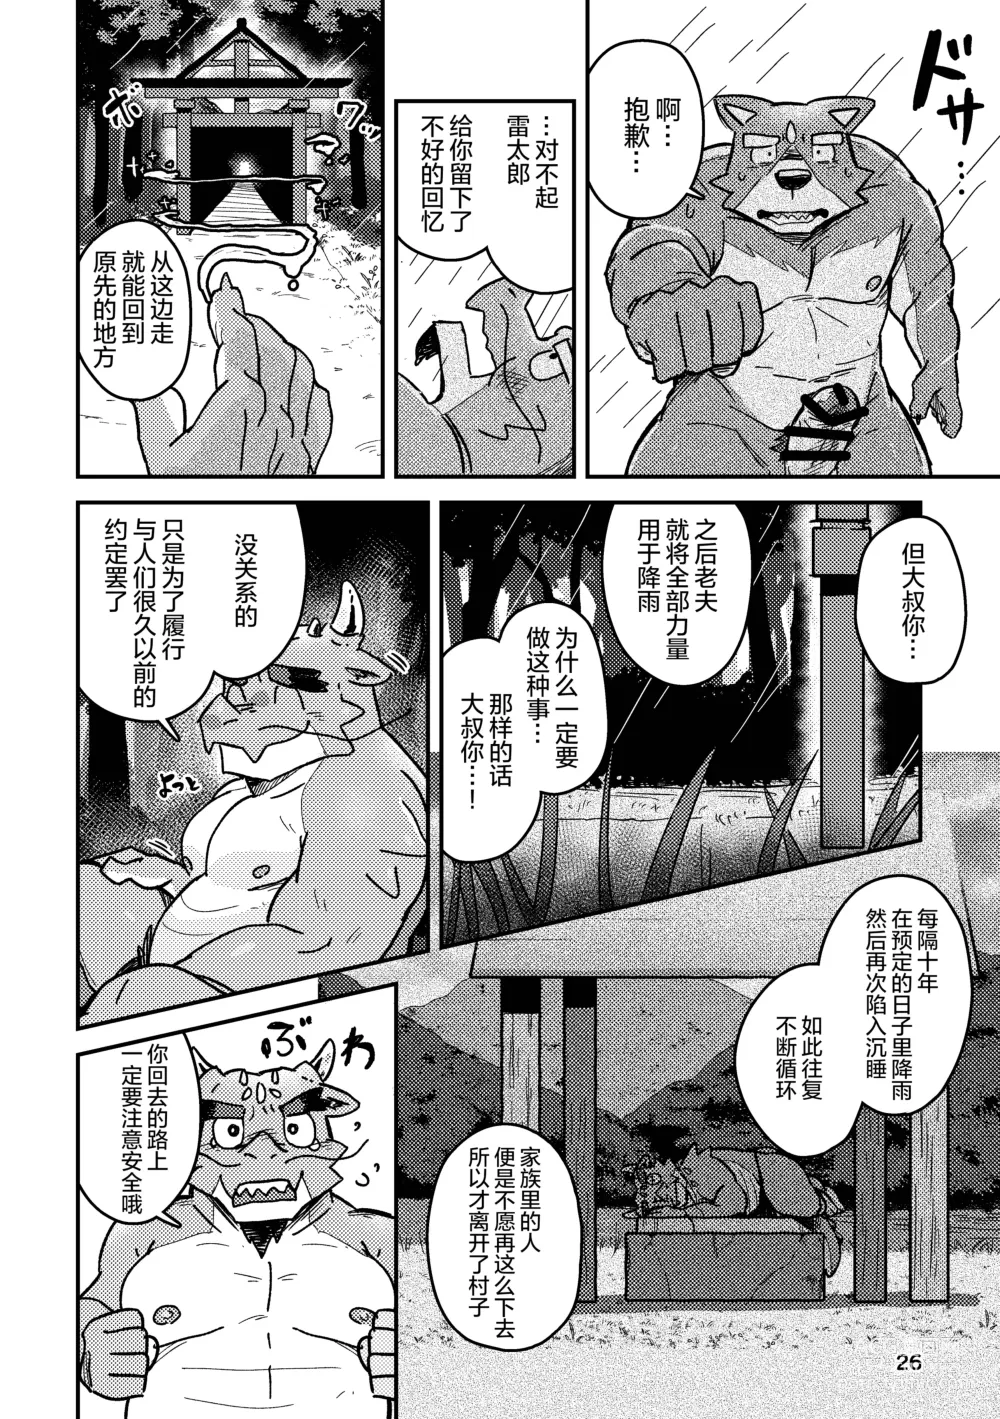 Page 26 of doujinshi 约定的龙穴